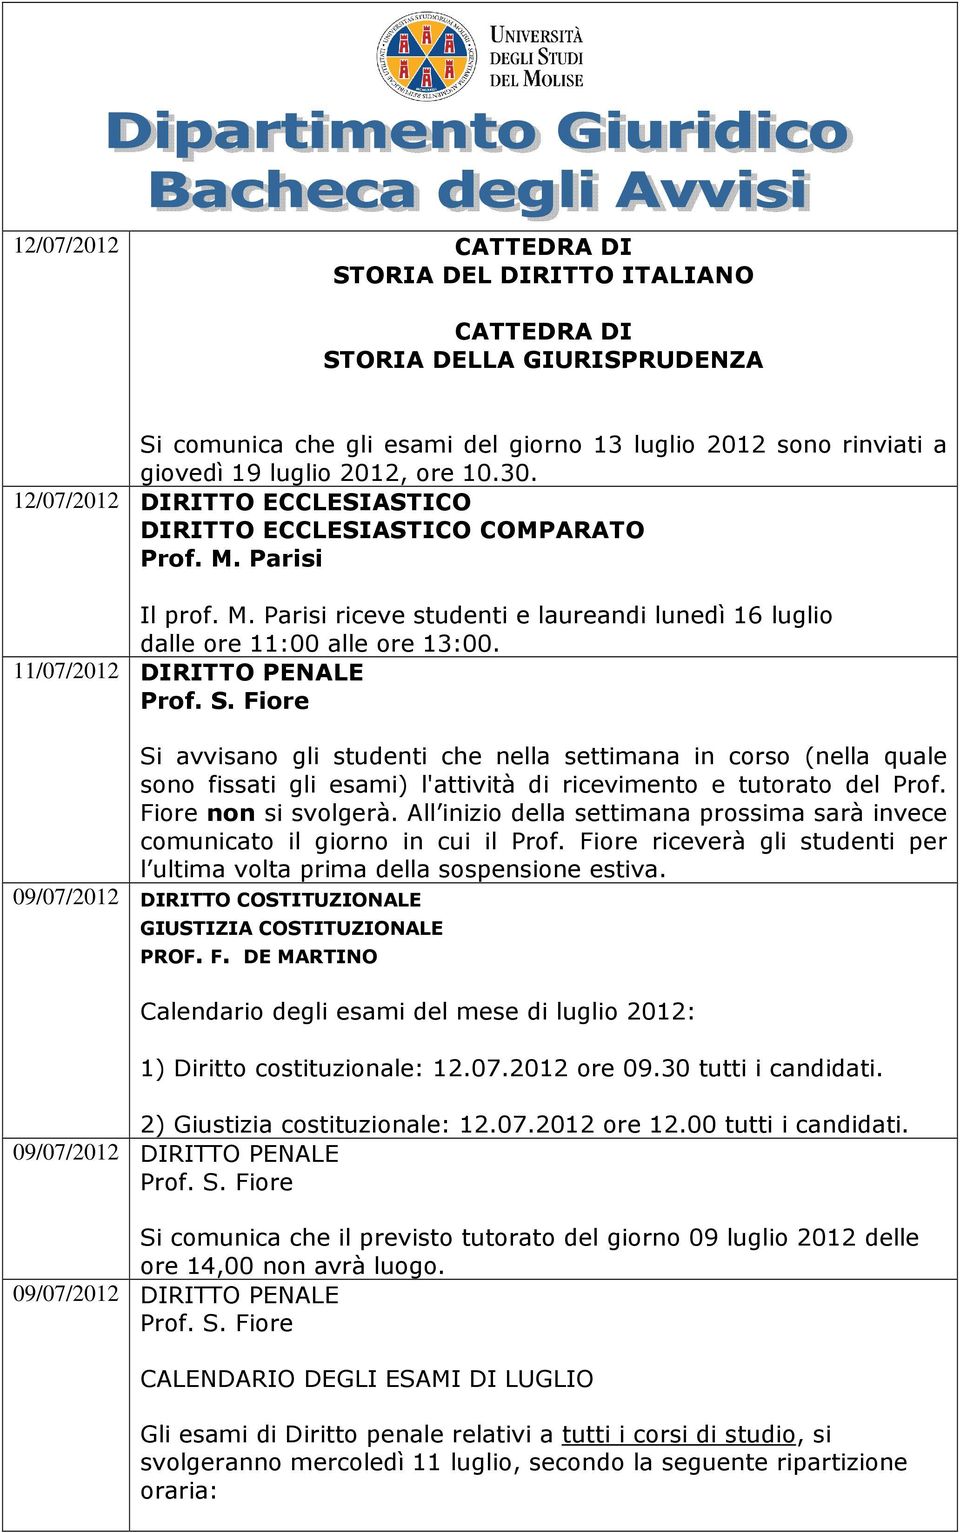 11/07/2012 DIRITTO PENALE Si avvisano gli studenti che nella settimana in corso (nella quale sono fissati gli esami) l'attività di ricevimento e tutorato del Prof. Fiore non si svolgerà.